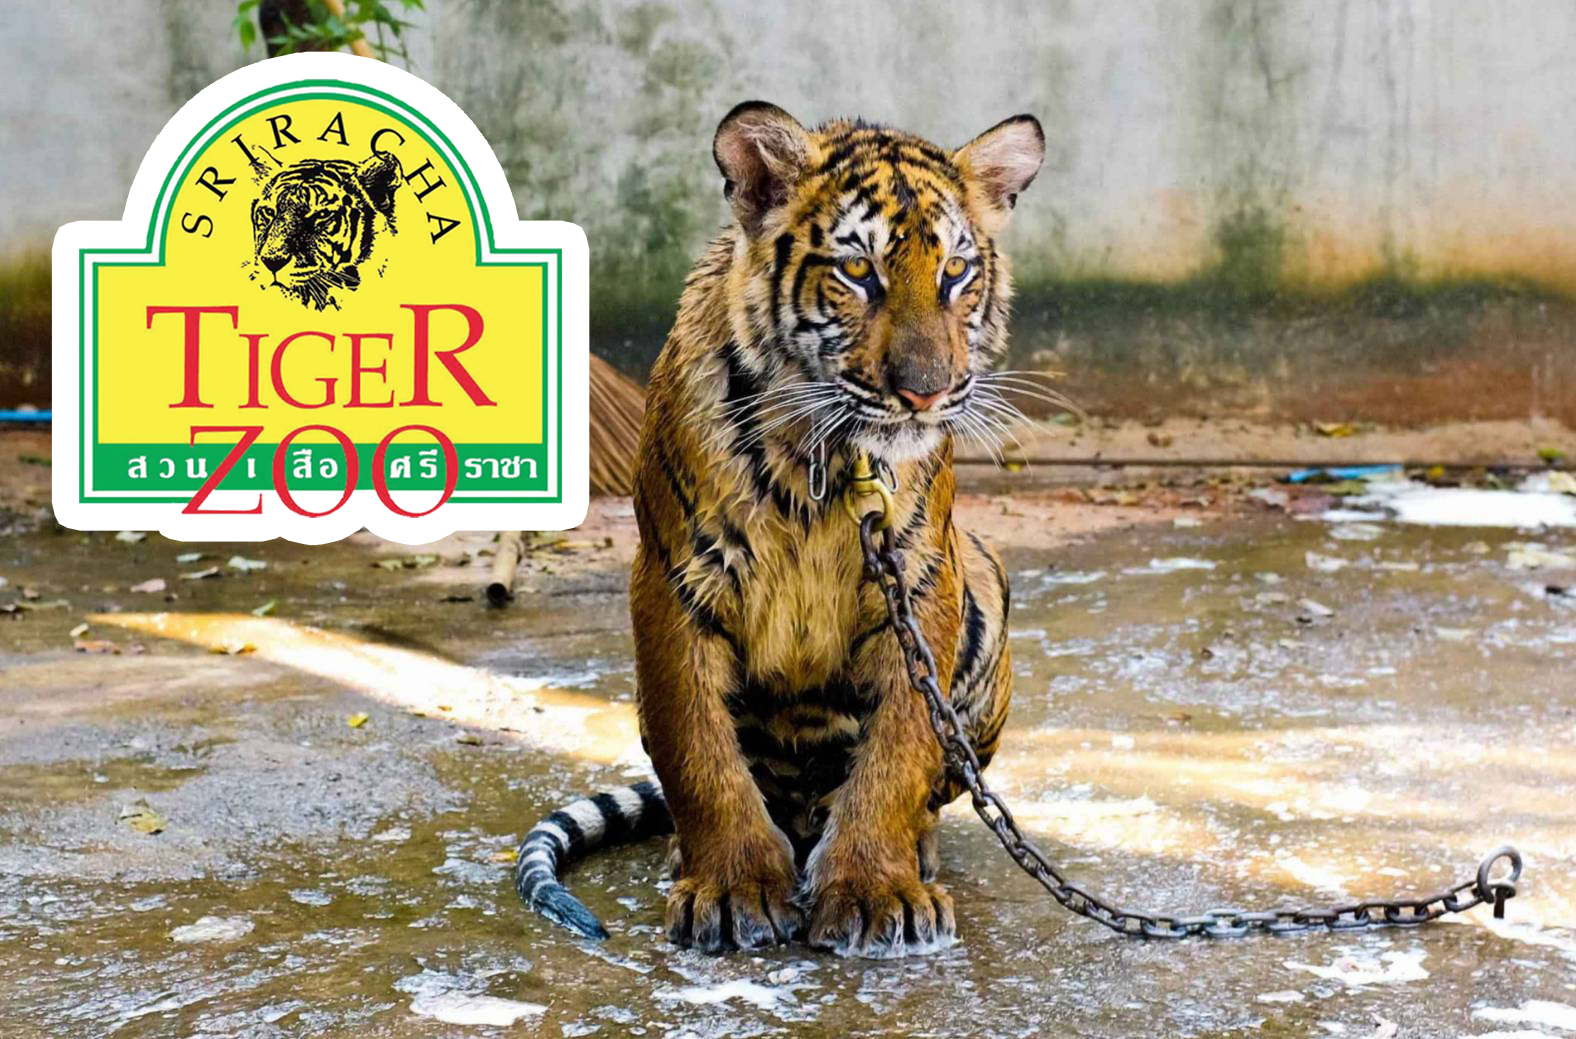 องค์กรพิทักษ์สัตว์โลก ห่วง “สวนเสือศรีราชา” วอนรัฐตรวจสอบ – สังคม